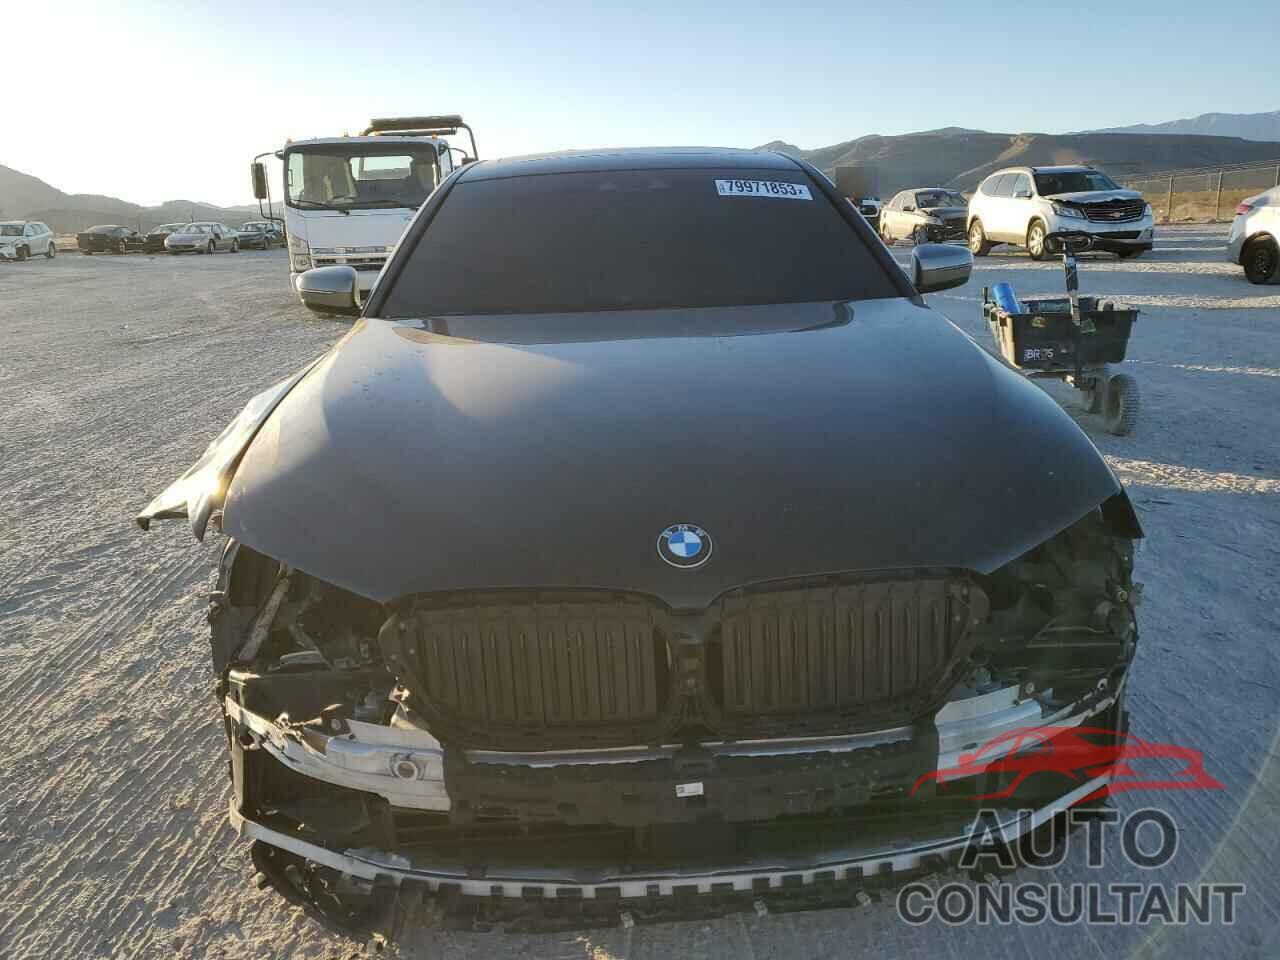 BMW M5 2018 - WBAJB9C57JB035275